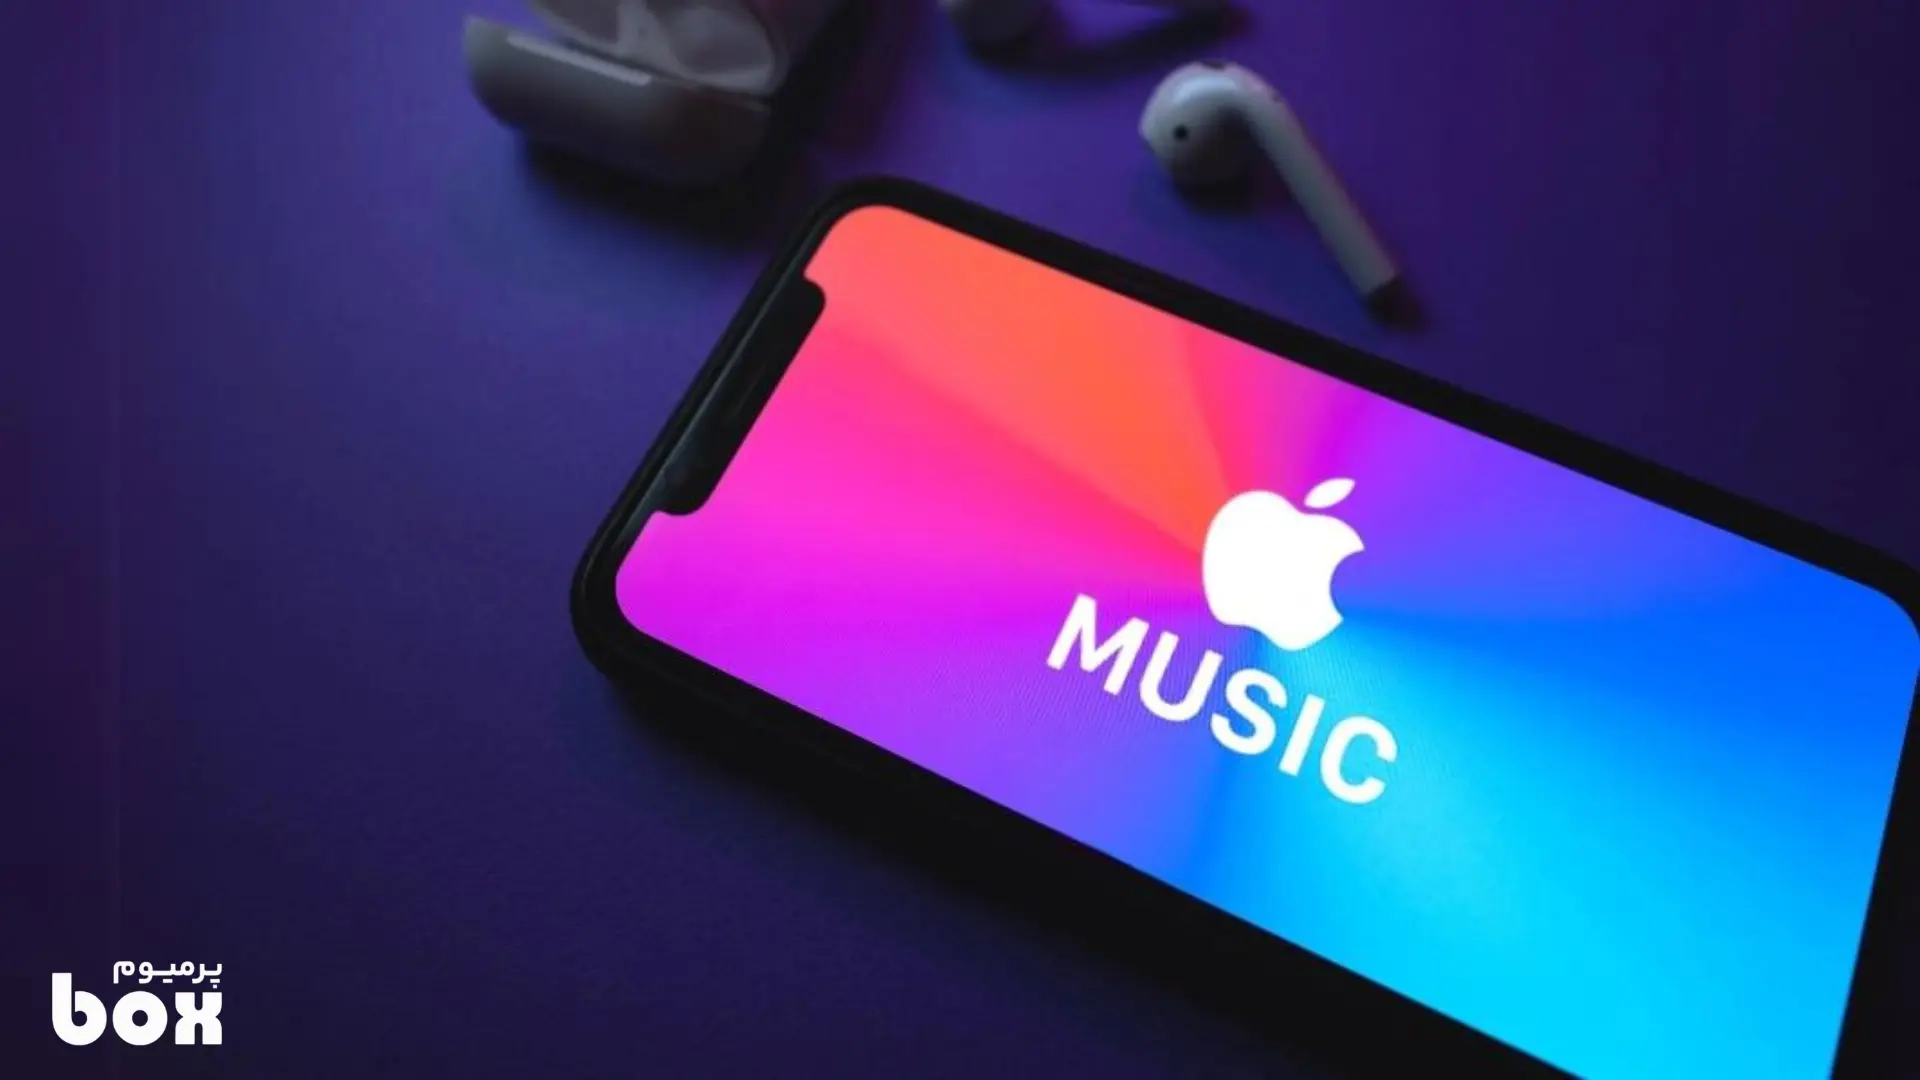 مزایای خرید اکانت اپل موزیک چیست و چه امکاناتی در اختیار کاربران قرار میدهد